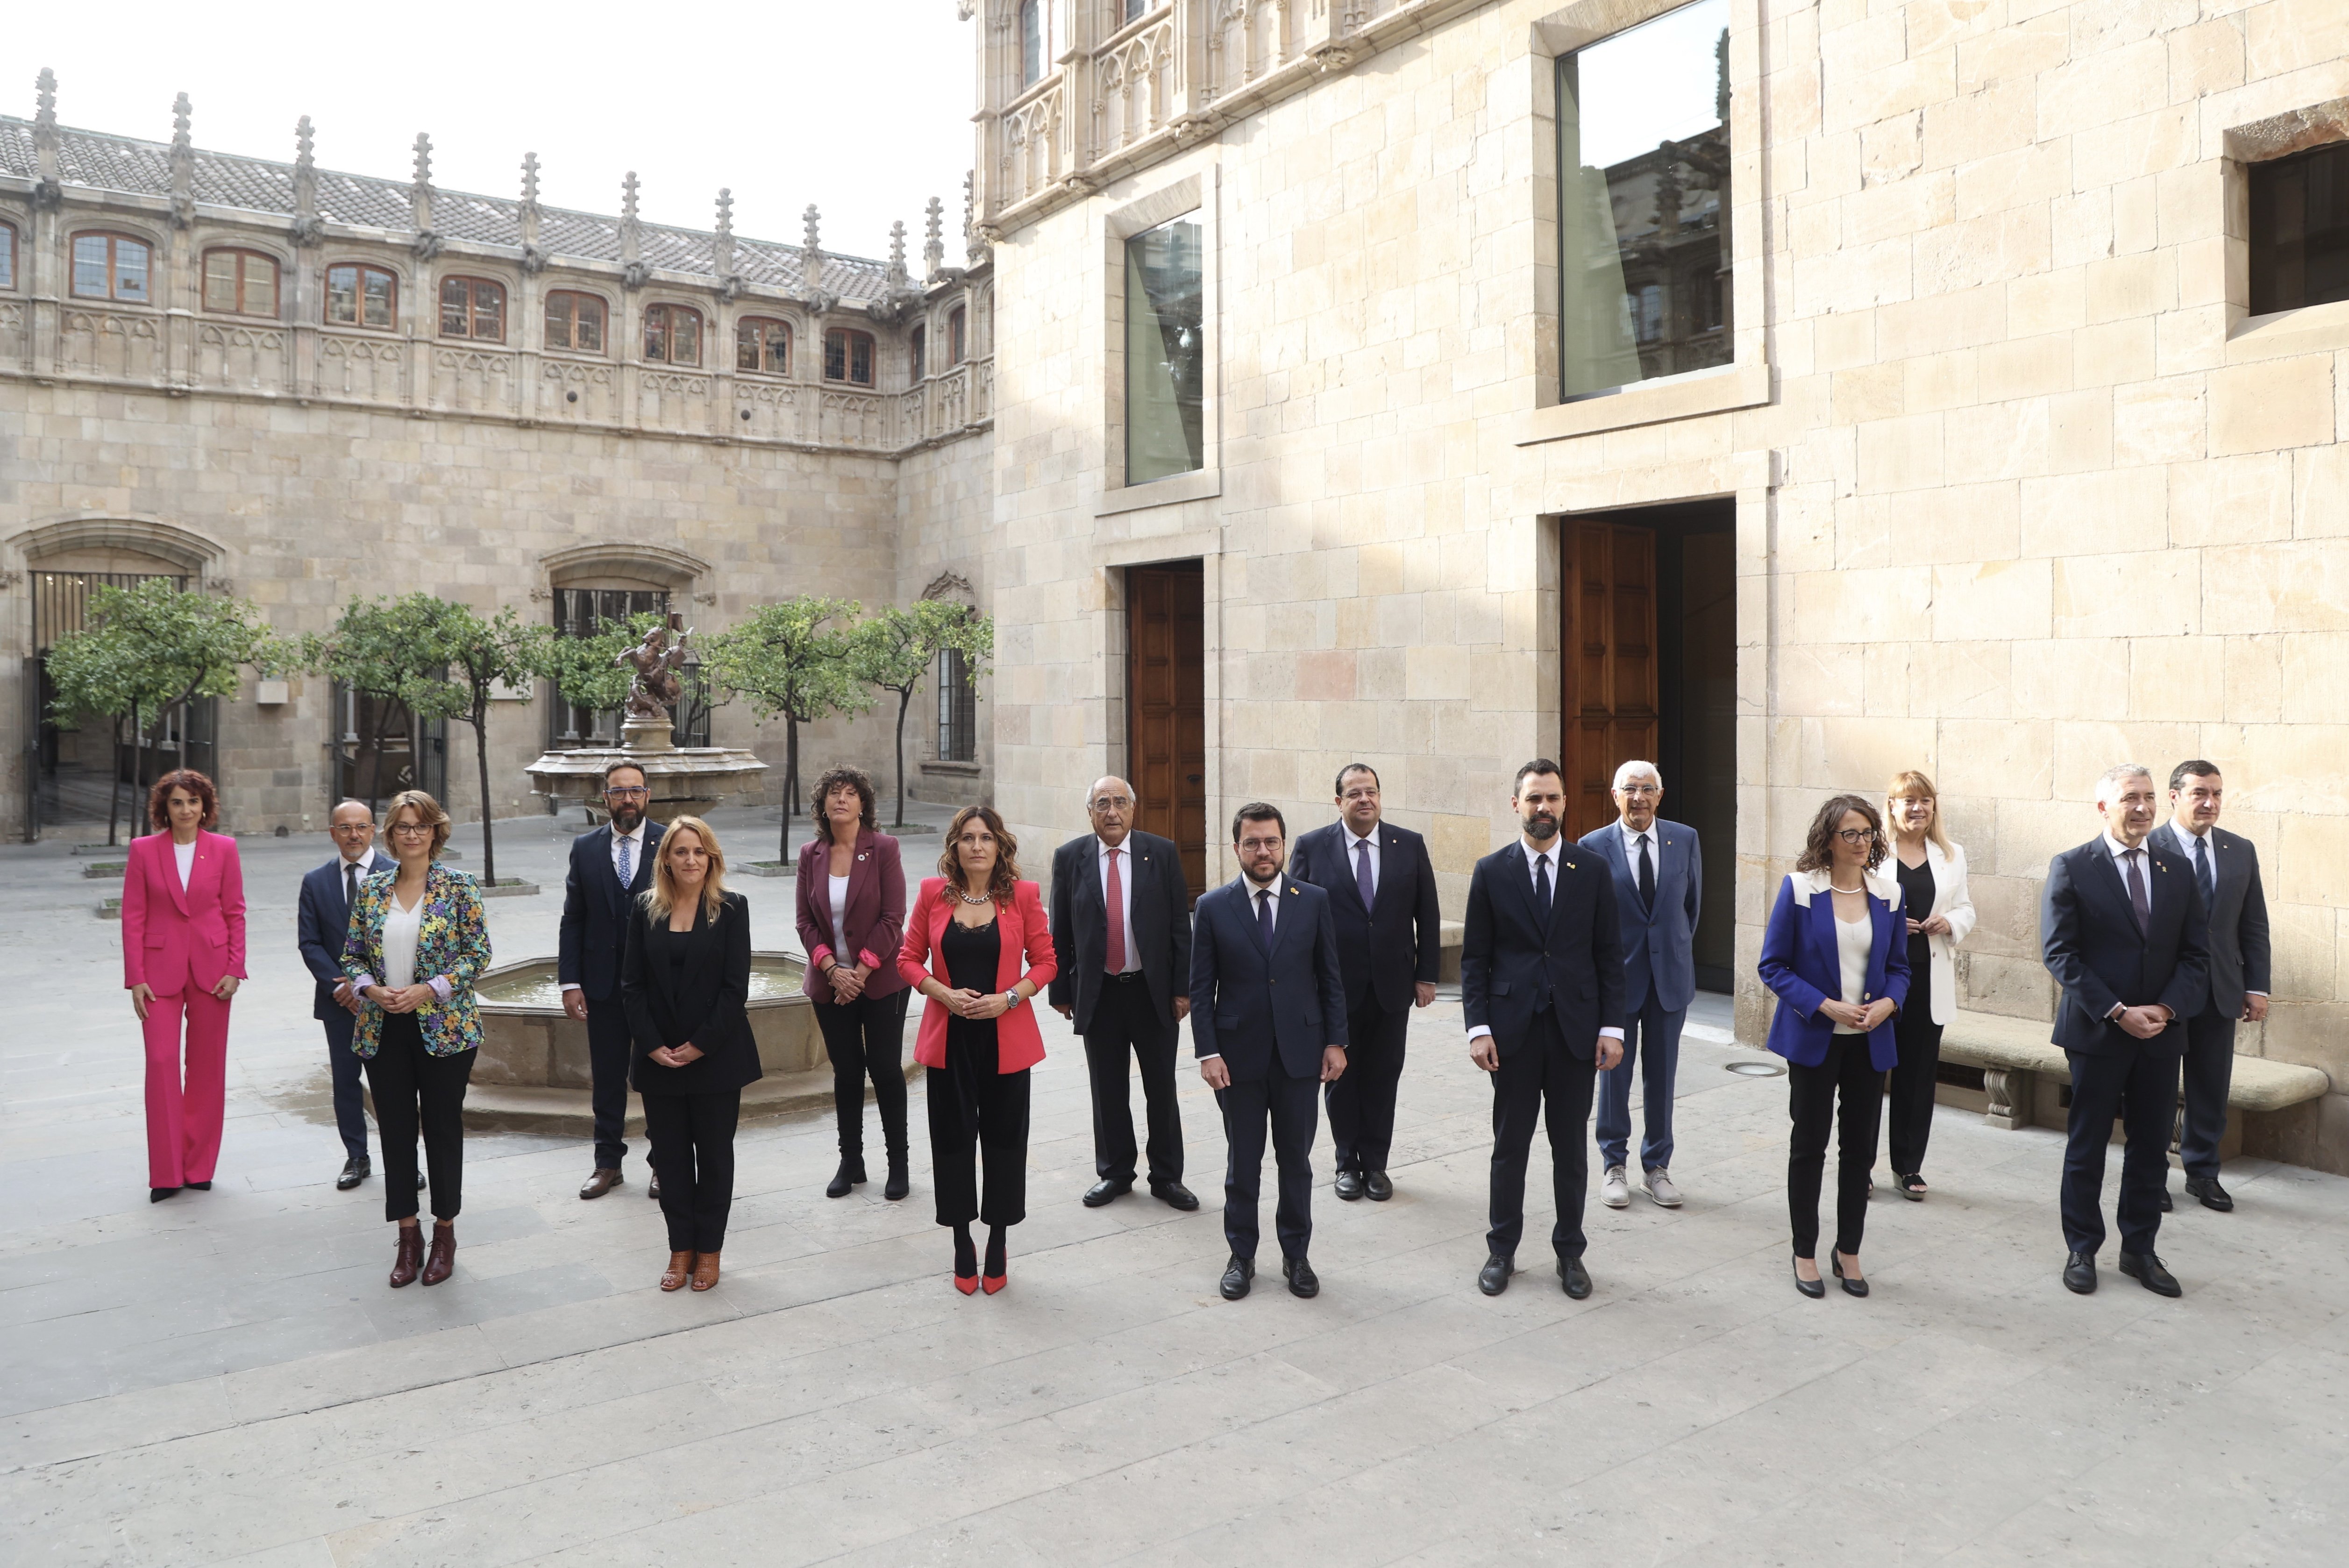 Pere Aragonès estrena el nuevo Govern de la Generalitat: los consellers toman posesión